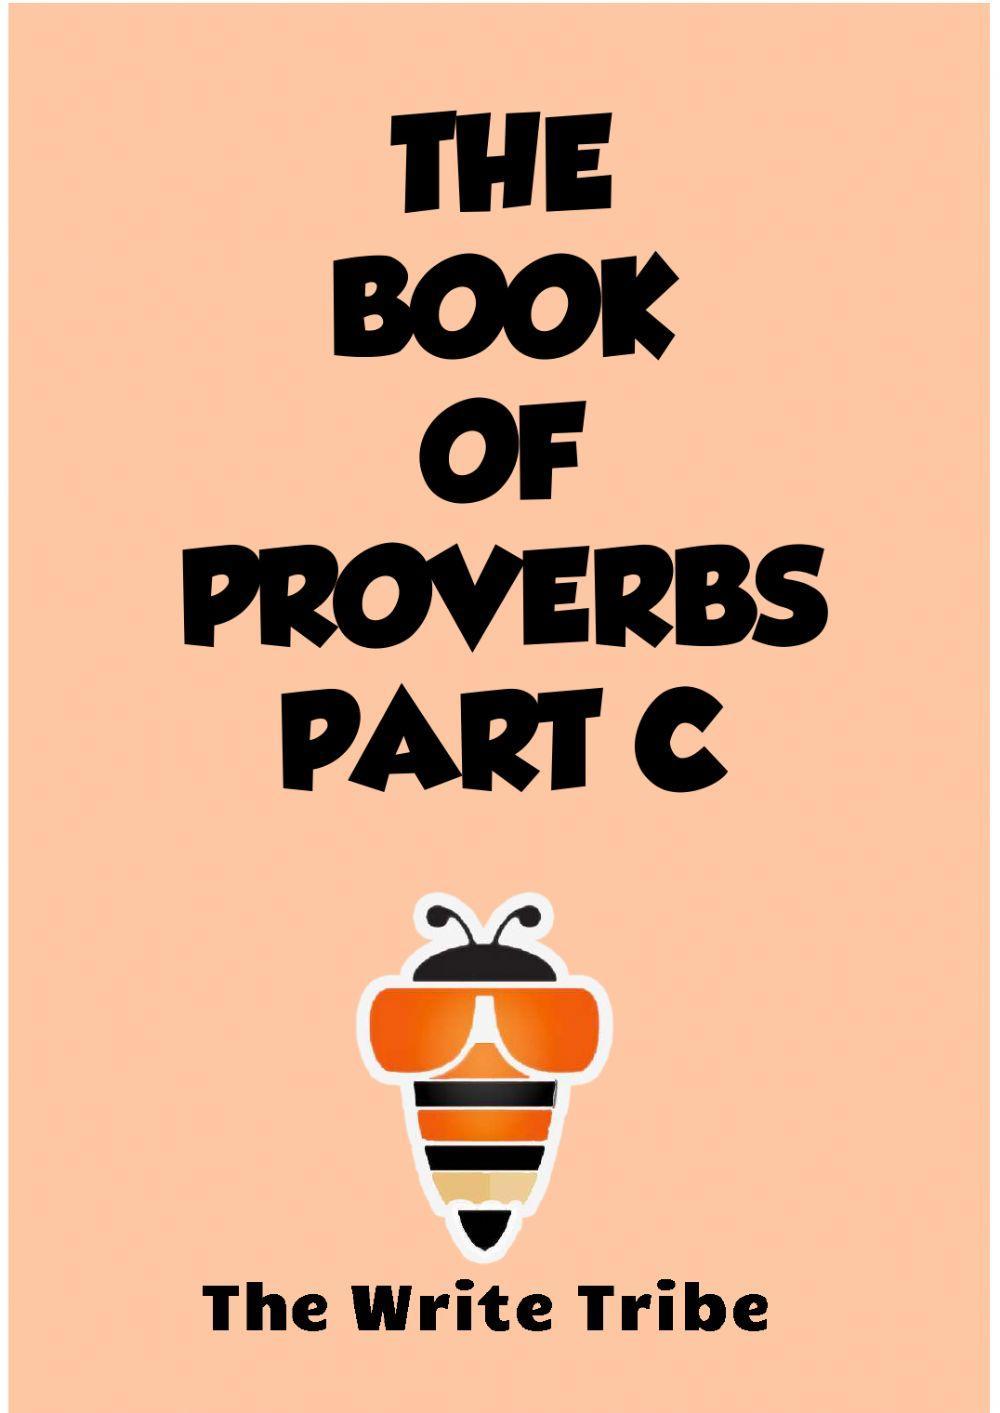 Proverbs workbook part c